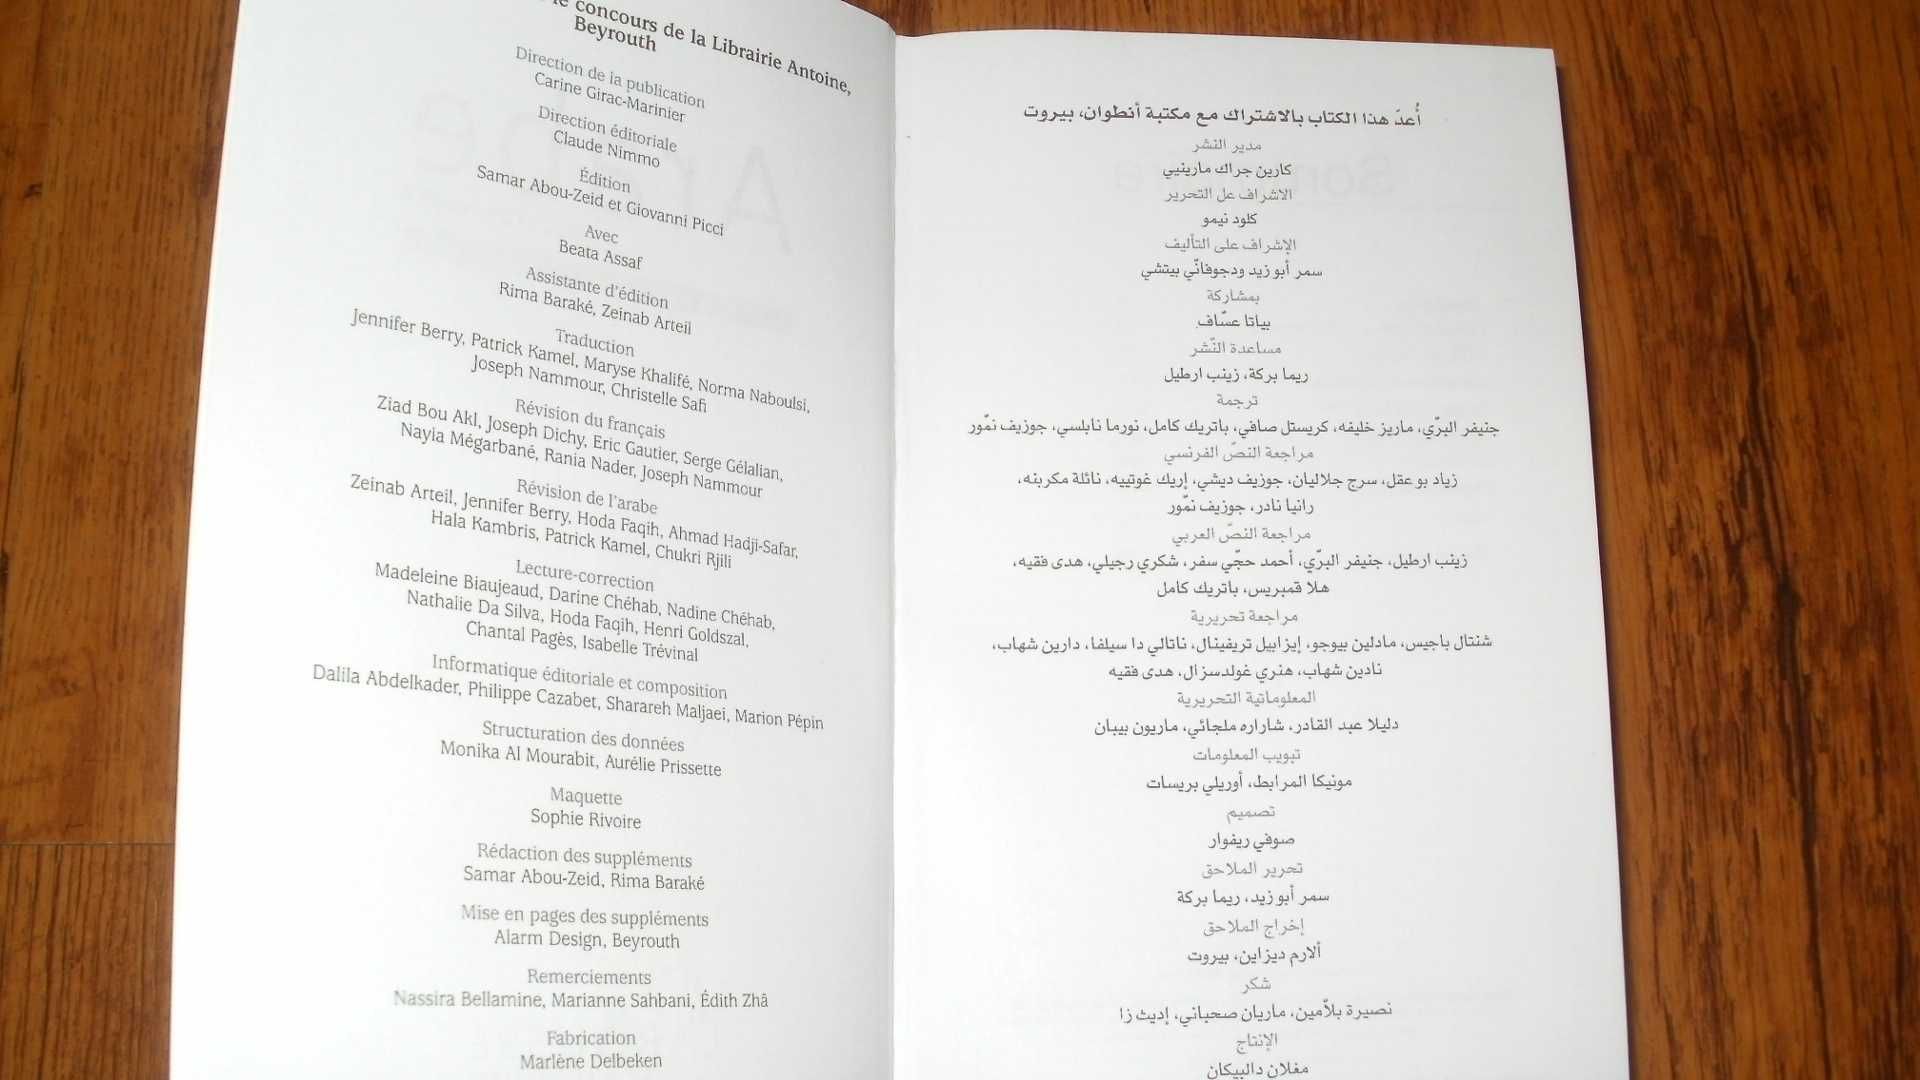 Dictionnaire arabe-français/ Daniel Reig; [publié par] Larousse 2013